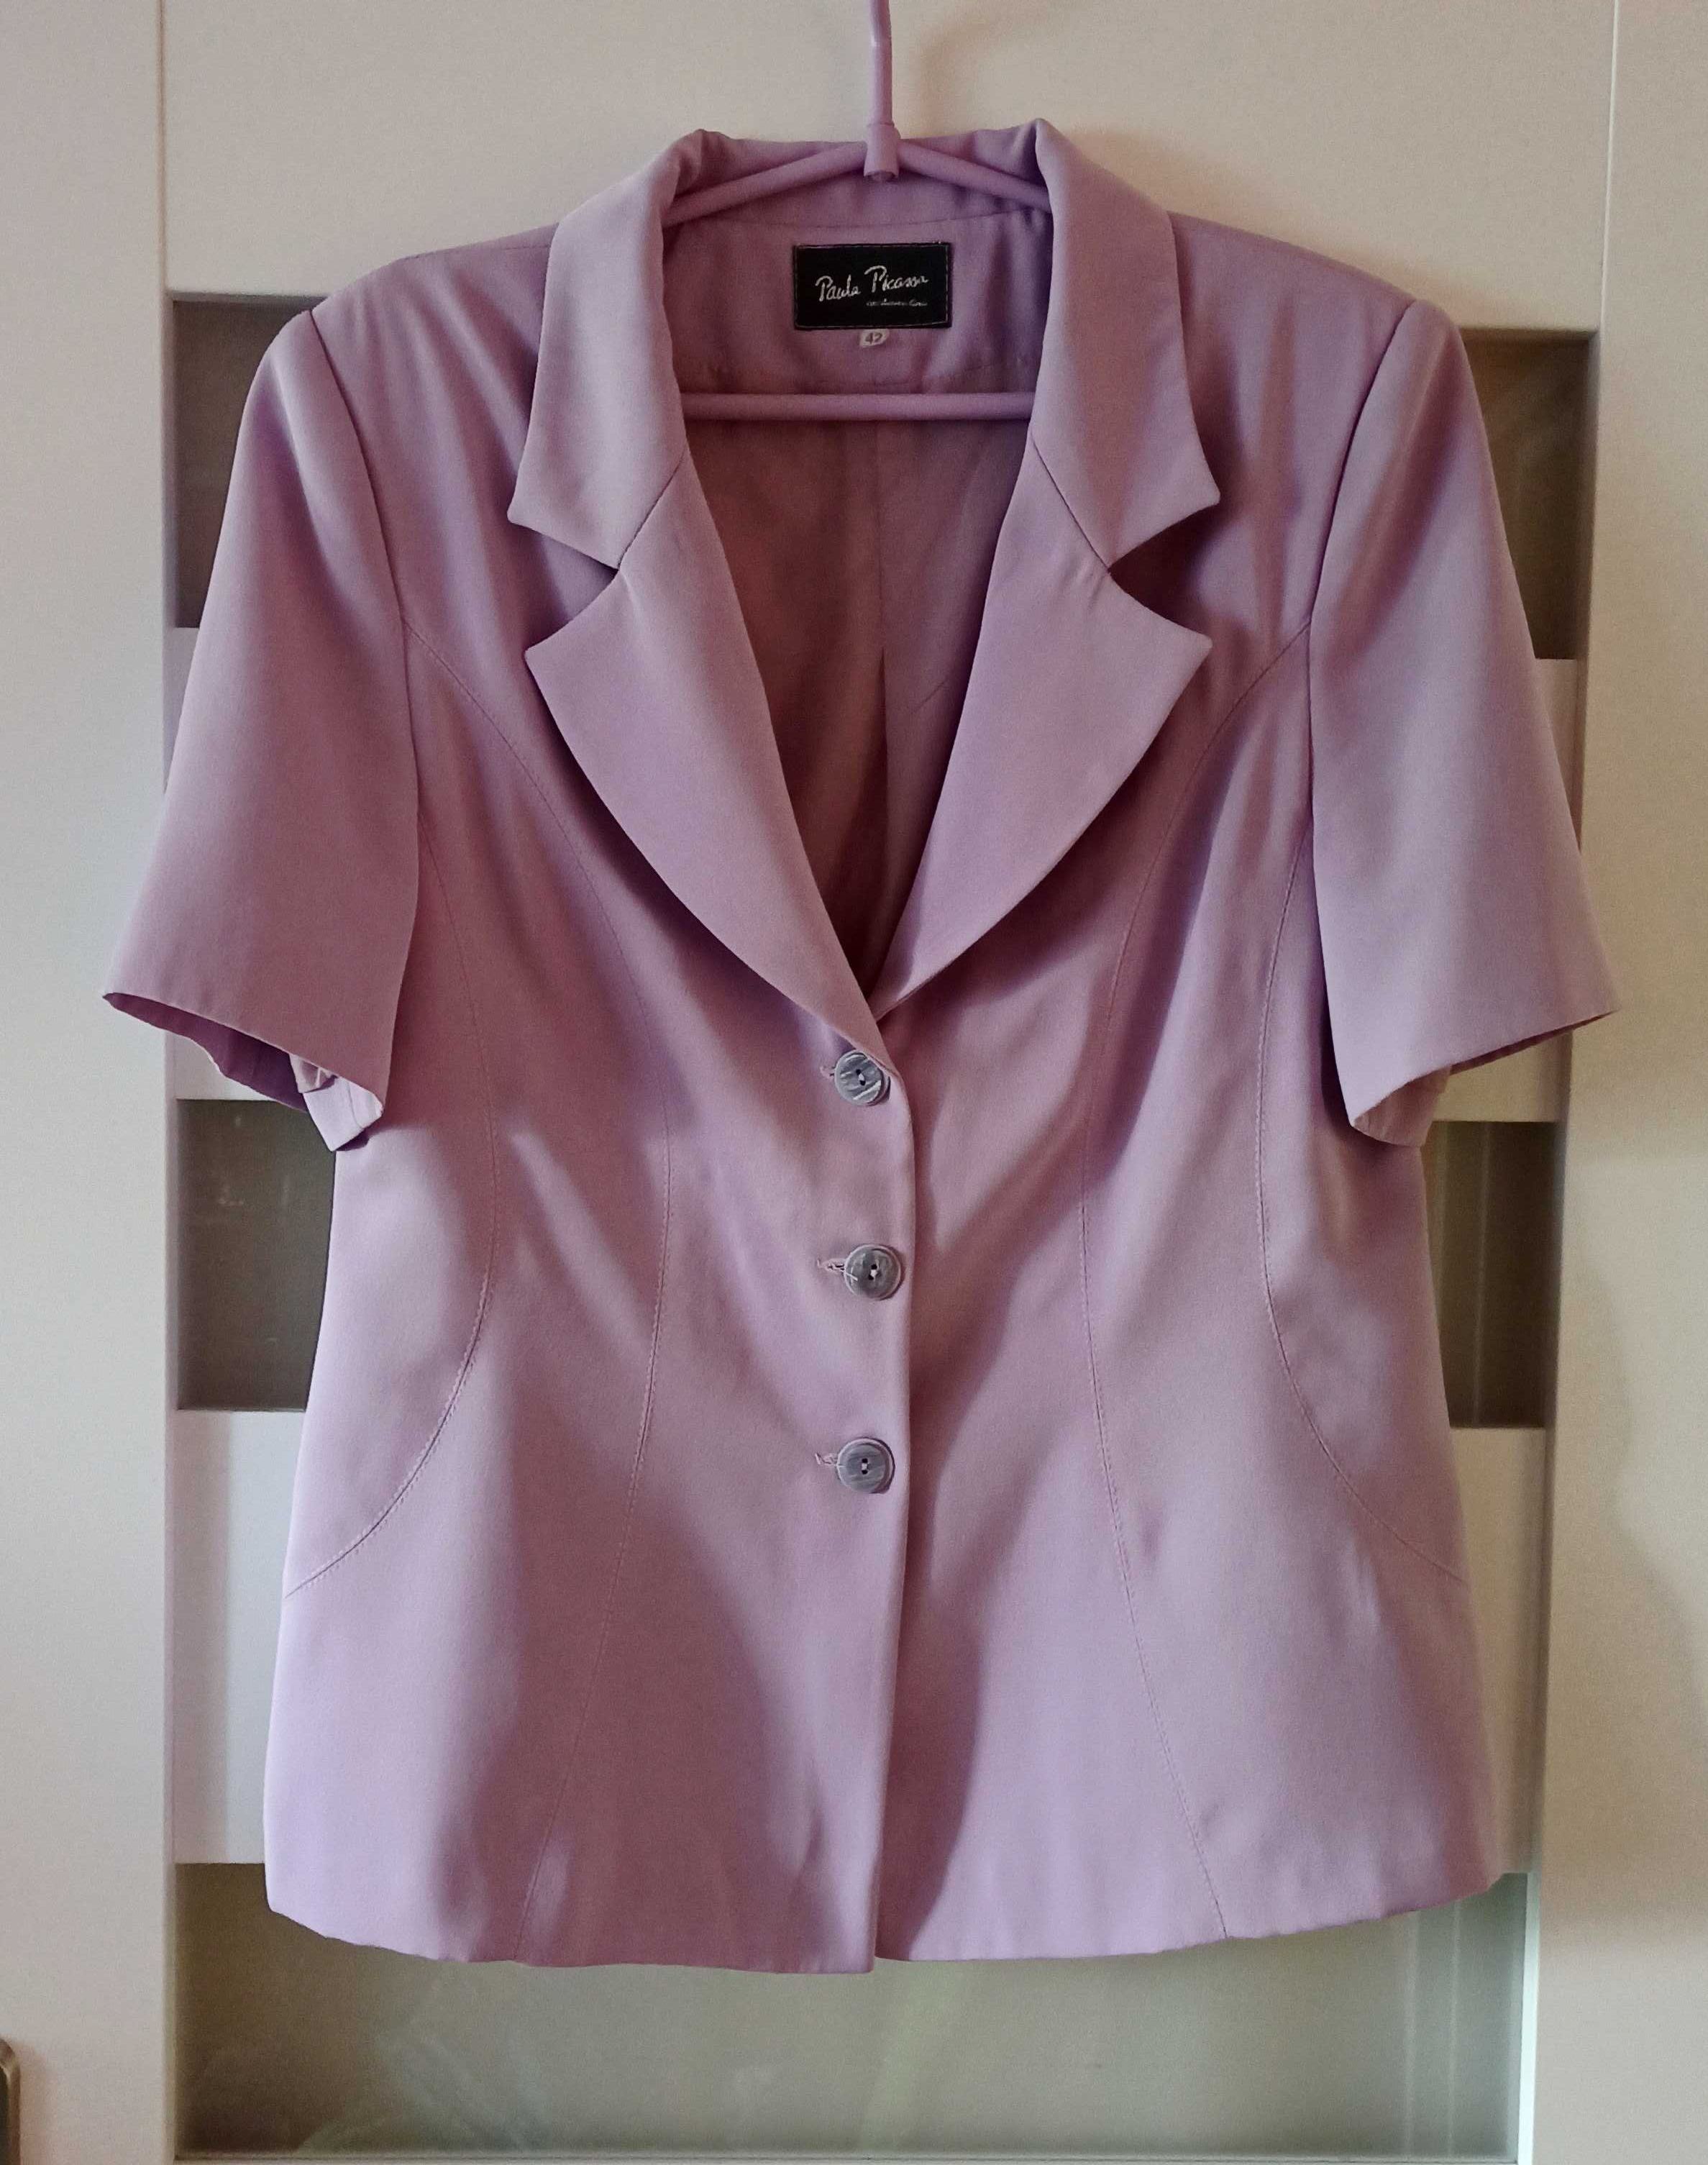 Liliowy fioletowy pastelowy komplet żakiet spódnica vintage retro 42